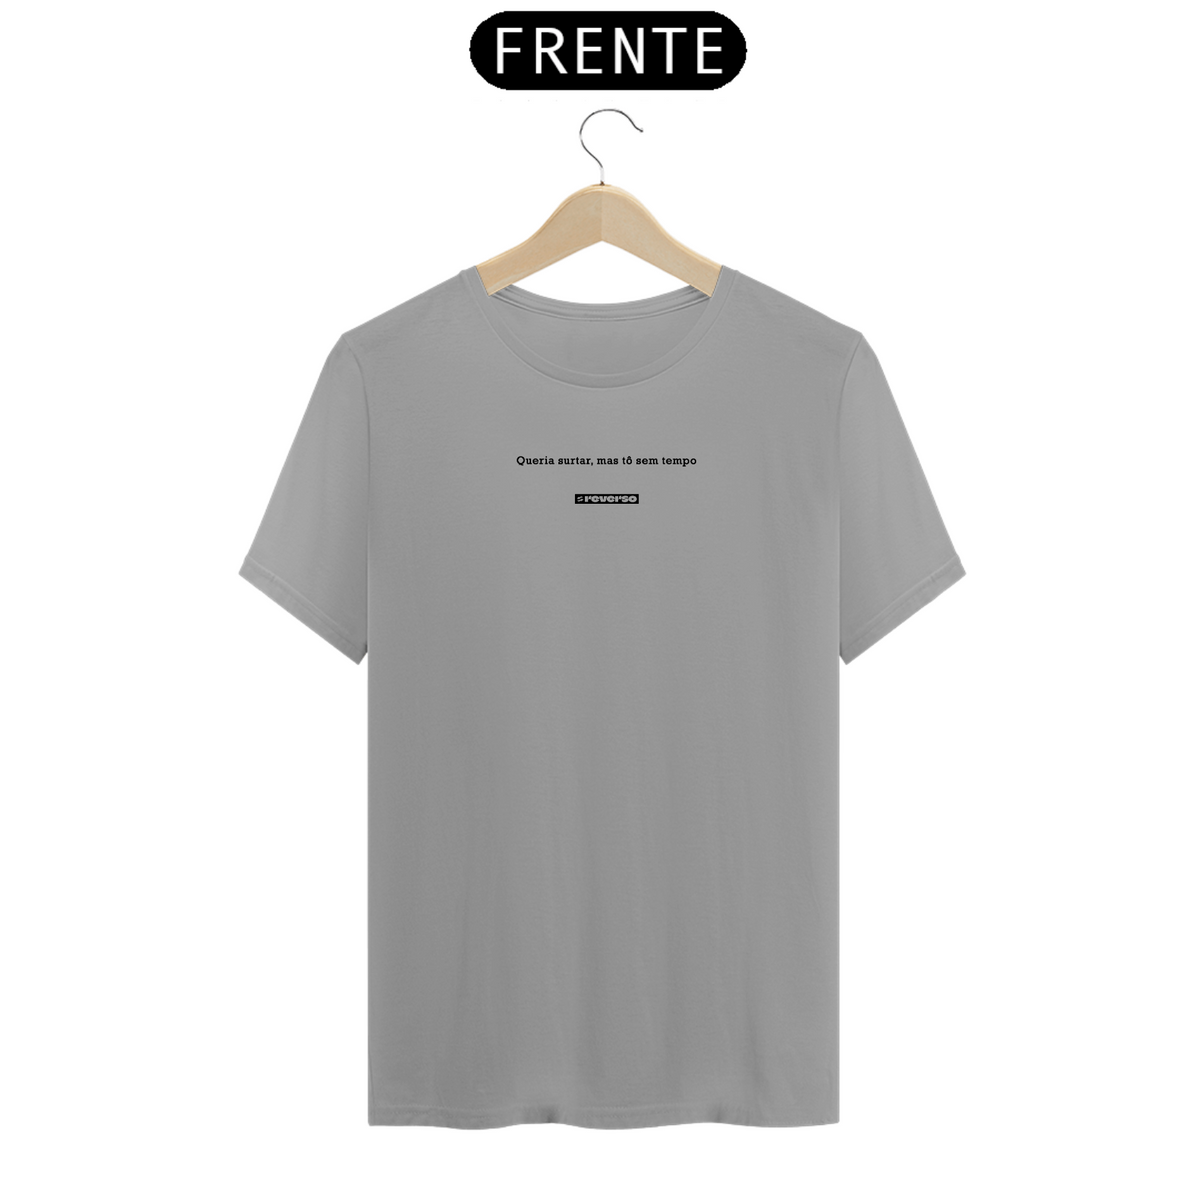 Nome do produto: Camiseta Queria Surtar, Mas Tô Sem Tempo 2